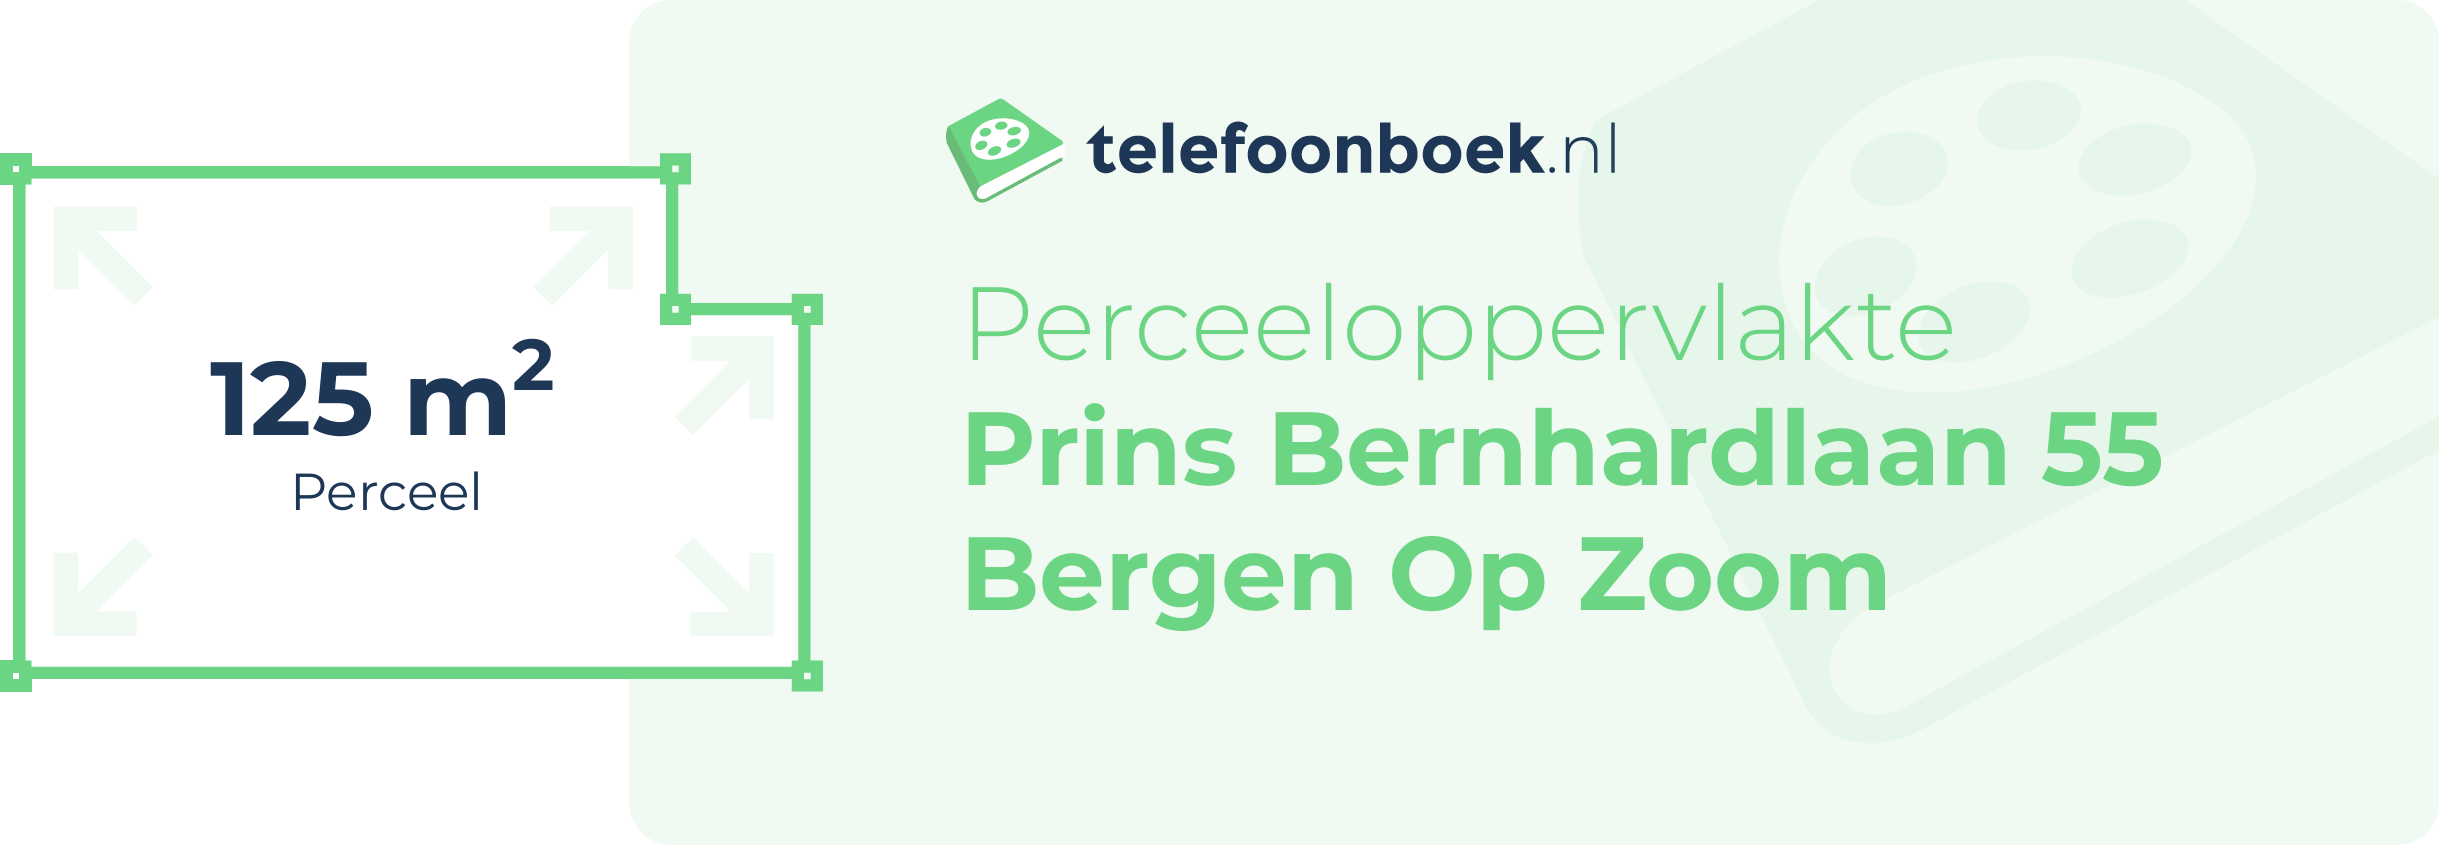 Perceeloppervlakte Prins Bernhardlaan 55 Bergen Op Zoom